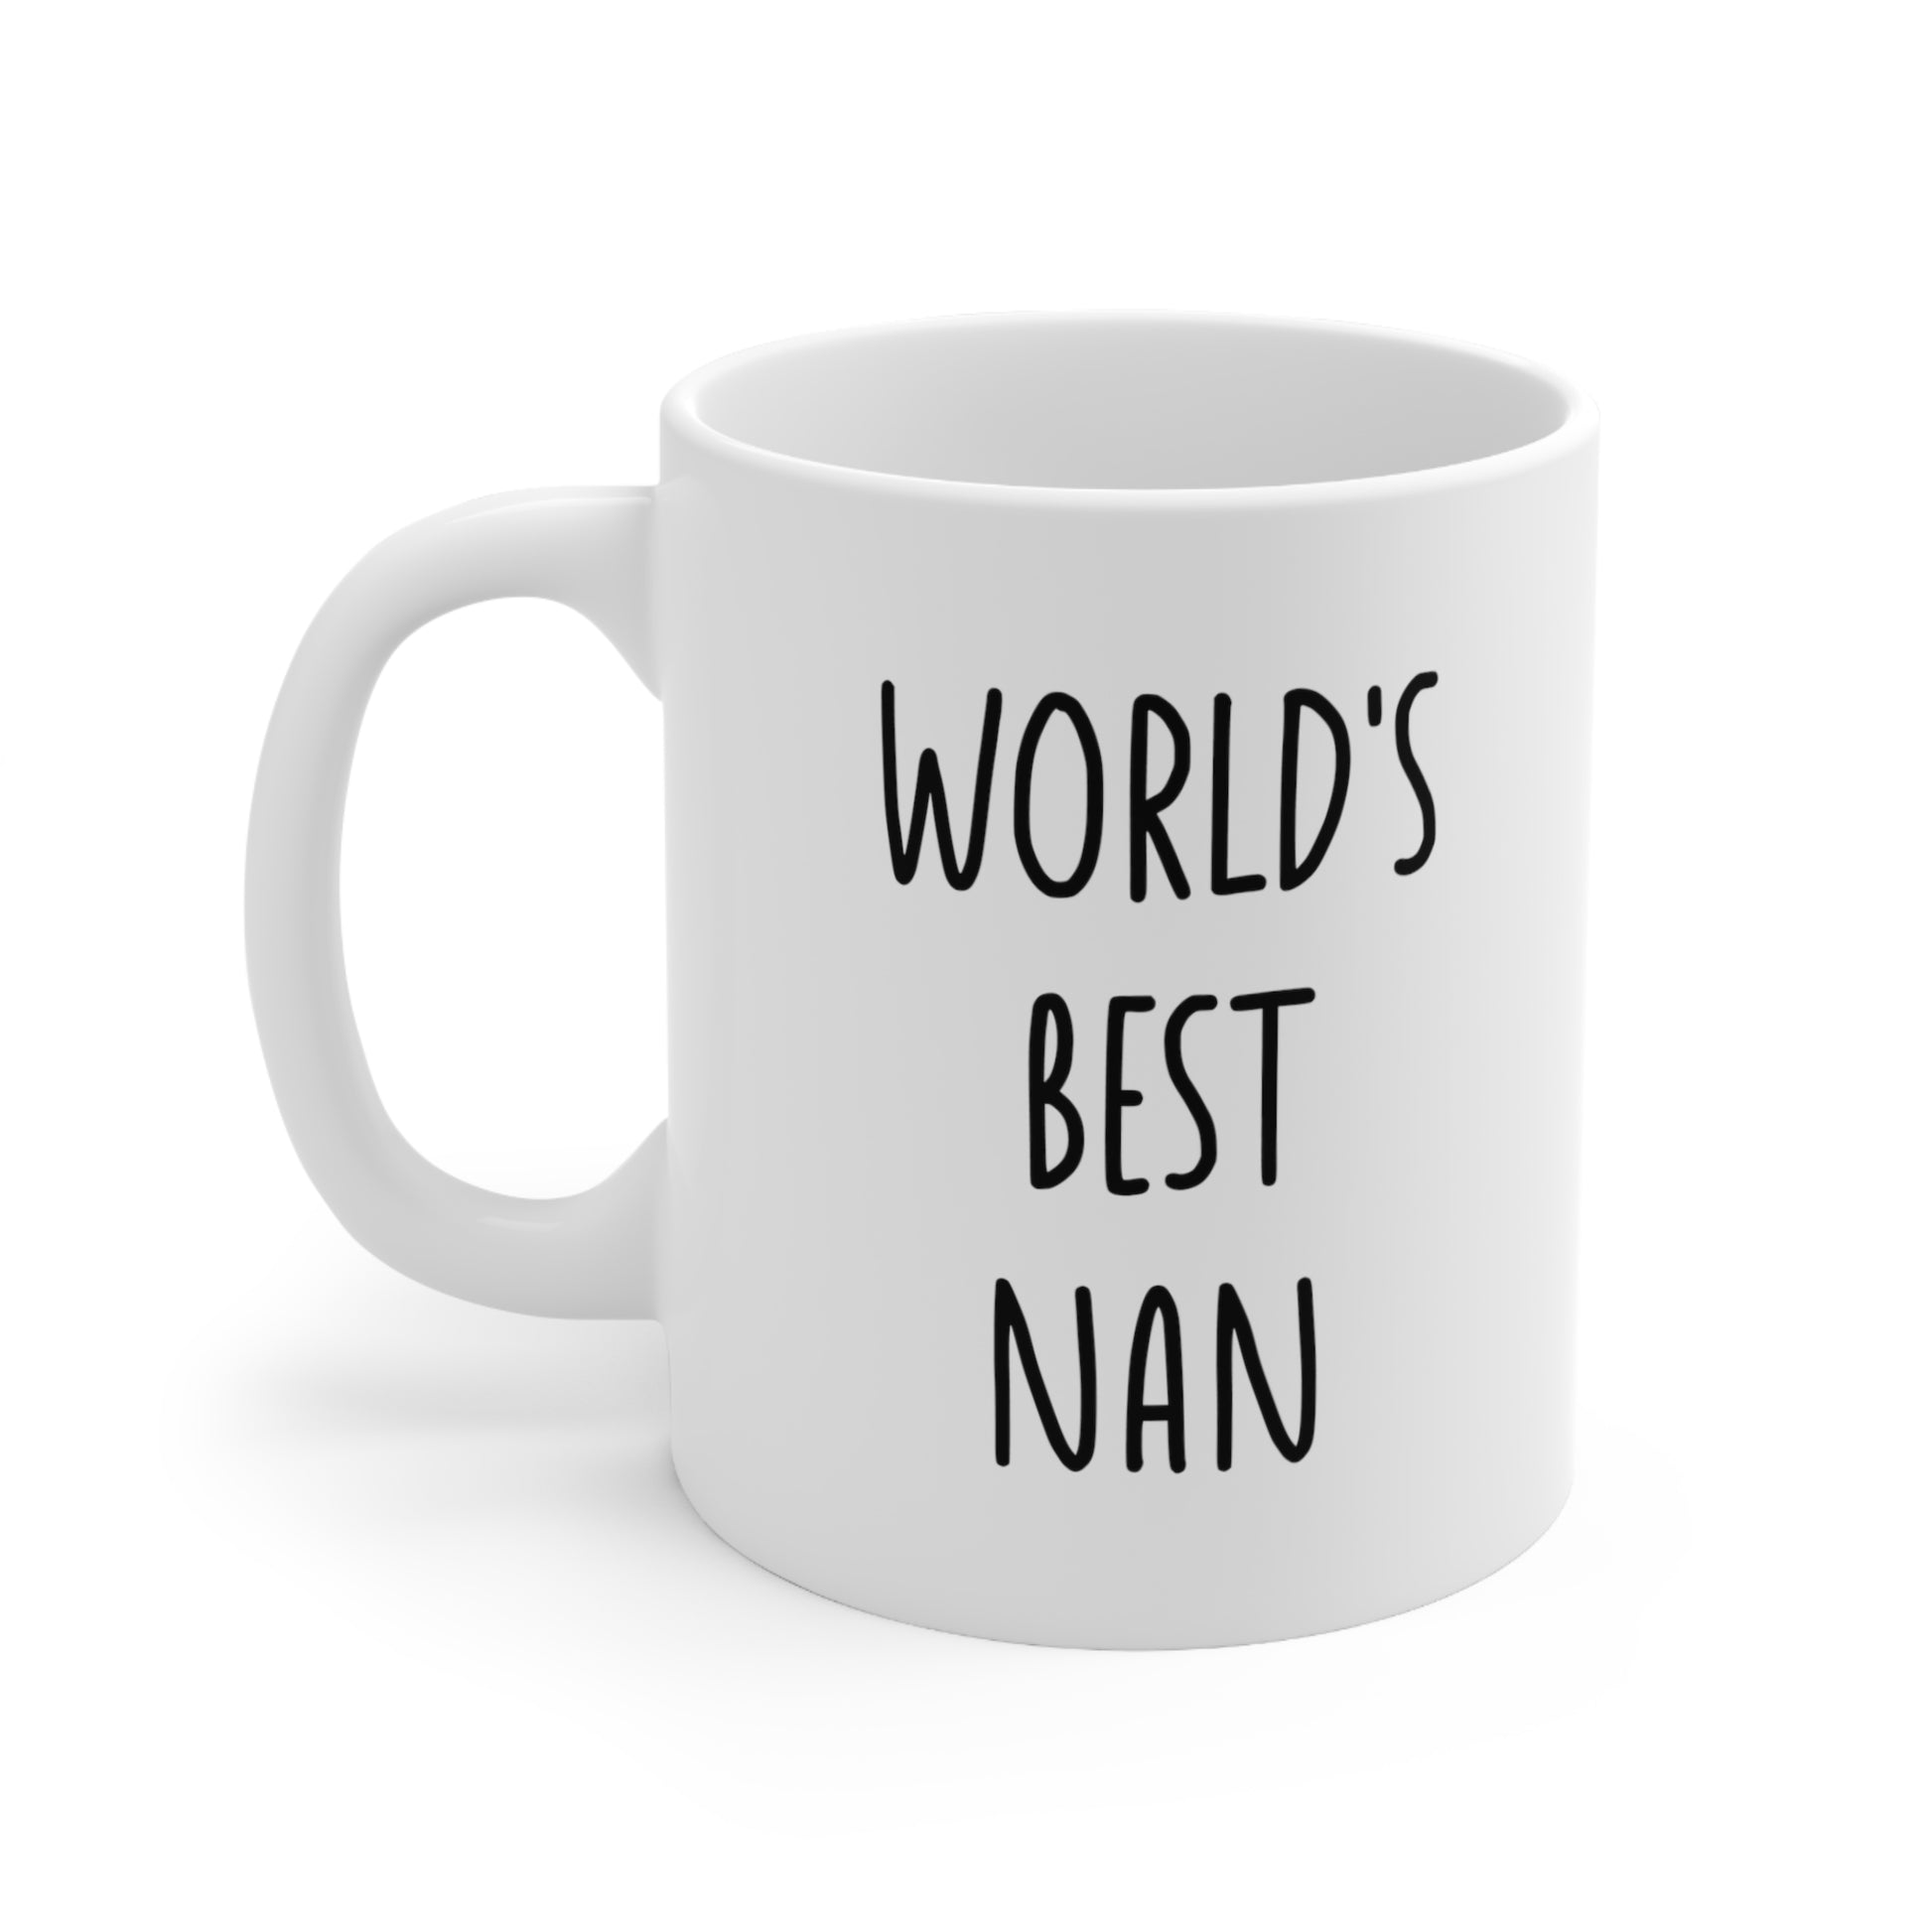 World's Best Nan Coffee Mug